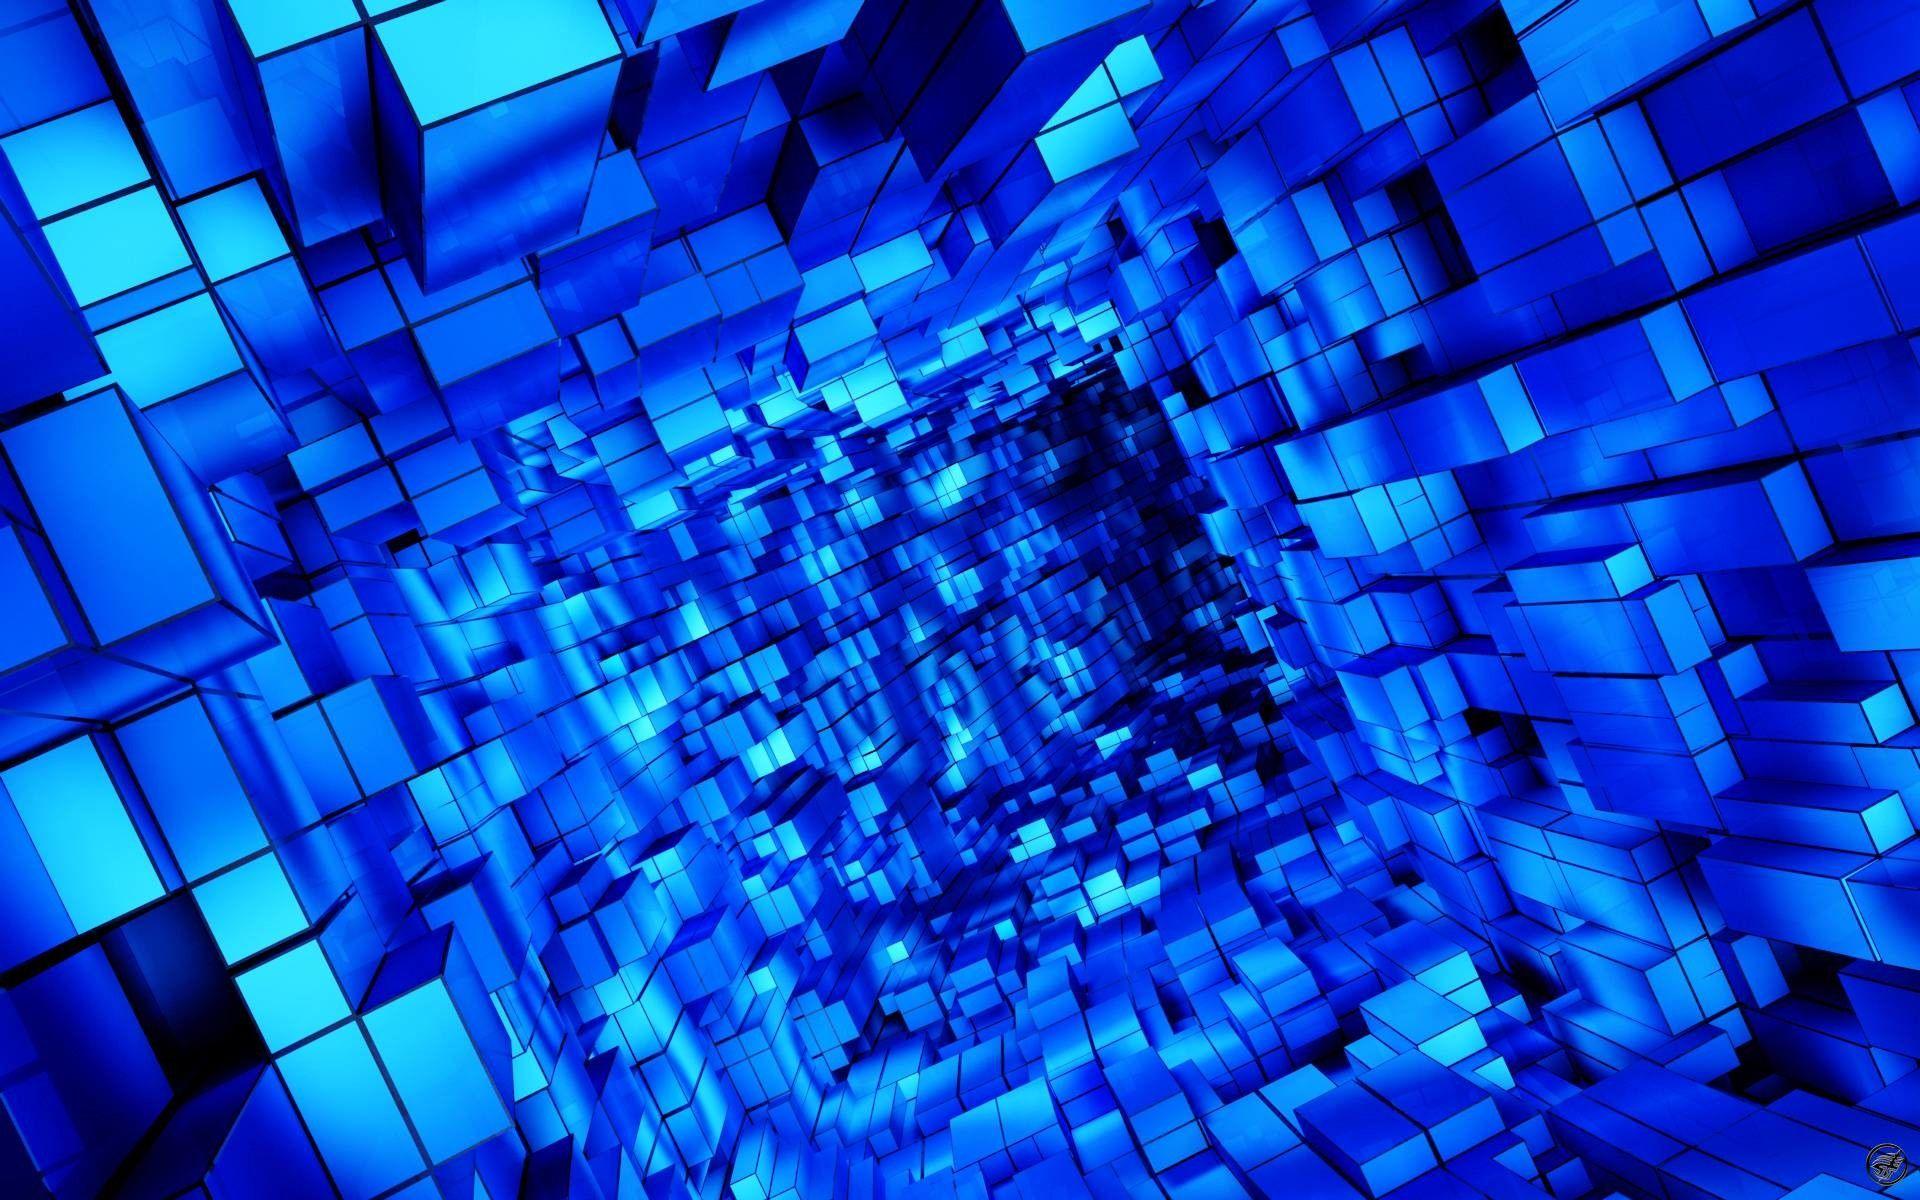 Hình nền blue cube wallpapers sẽ đem lại cho bạn một không gian làm việc hoặc giải trí lý tưởng. Với màu sắc xanh dương tươi sáng và hình dạng khối hộp đầy đặn, bạn sẽ cảm thấy thật sự dễ chịu và ý nghĩa hơn bao giờ hết.